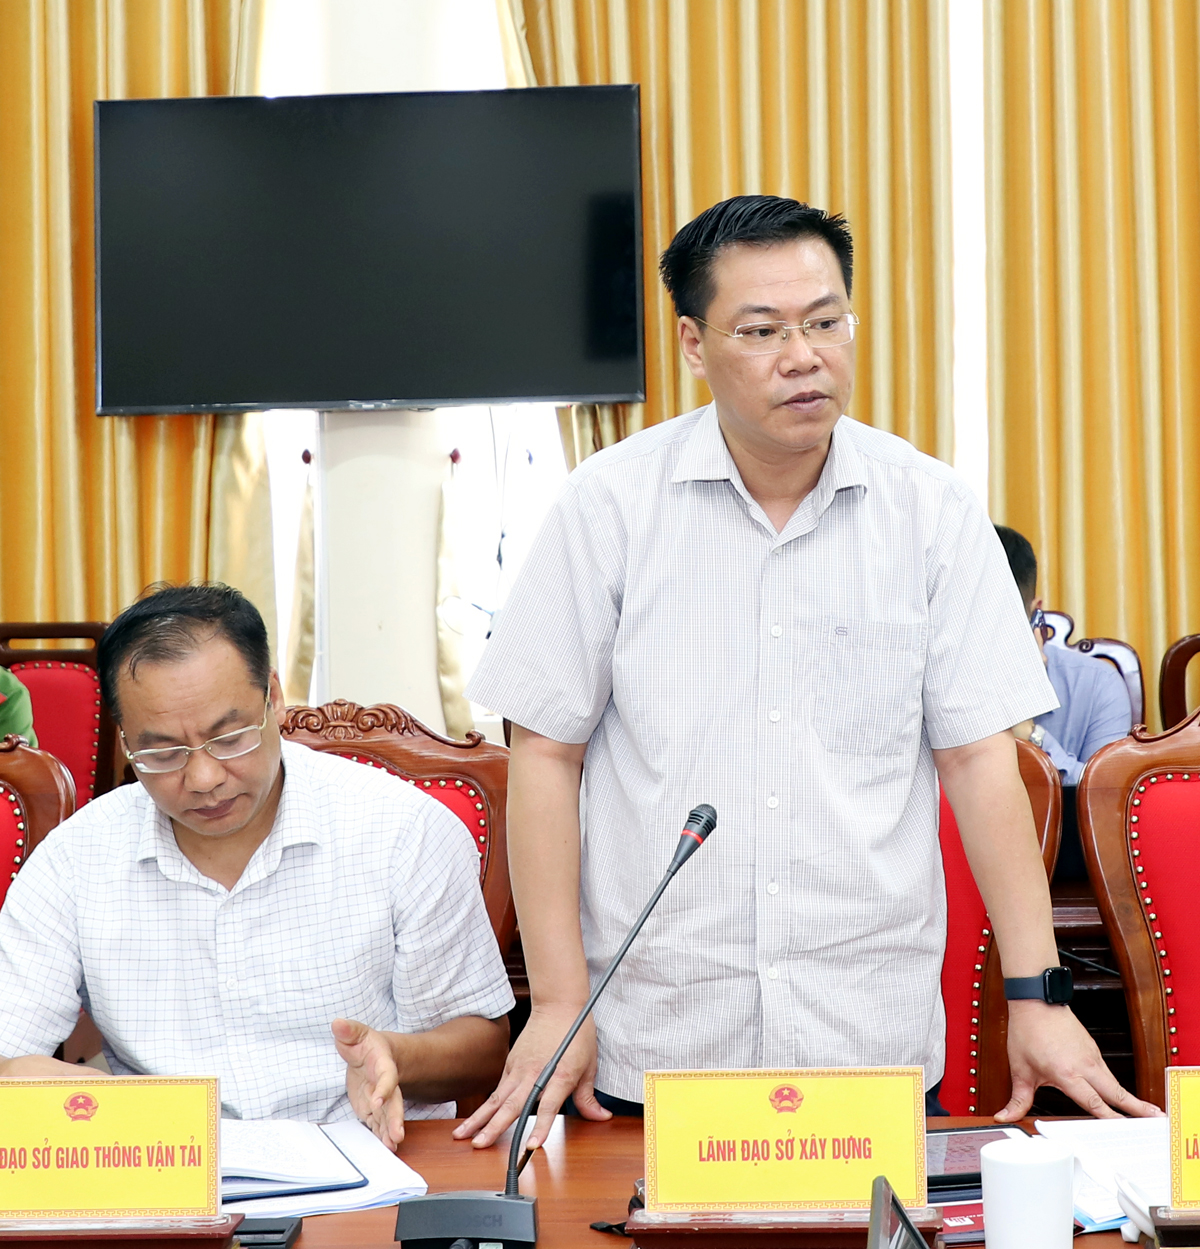 Giám đốc Sở Xây dựng Nguyễn Tiến Dũng đề nghị huyện Quang Bình quan tâm công tác quy hoạch; ưu tiên nguồn lực để chỉnh trang khu vực trung tâm các xã đang phấn đấu đạt chuẩn Nông thôn mới.